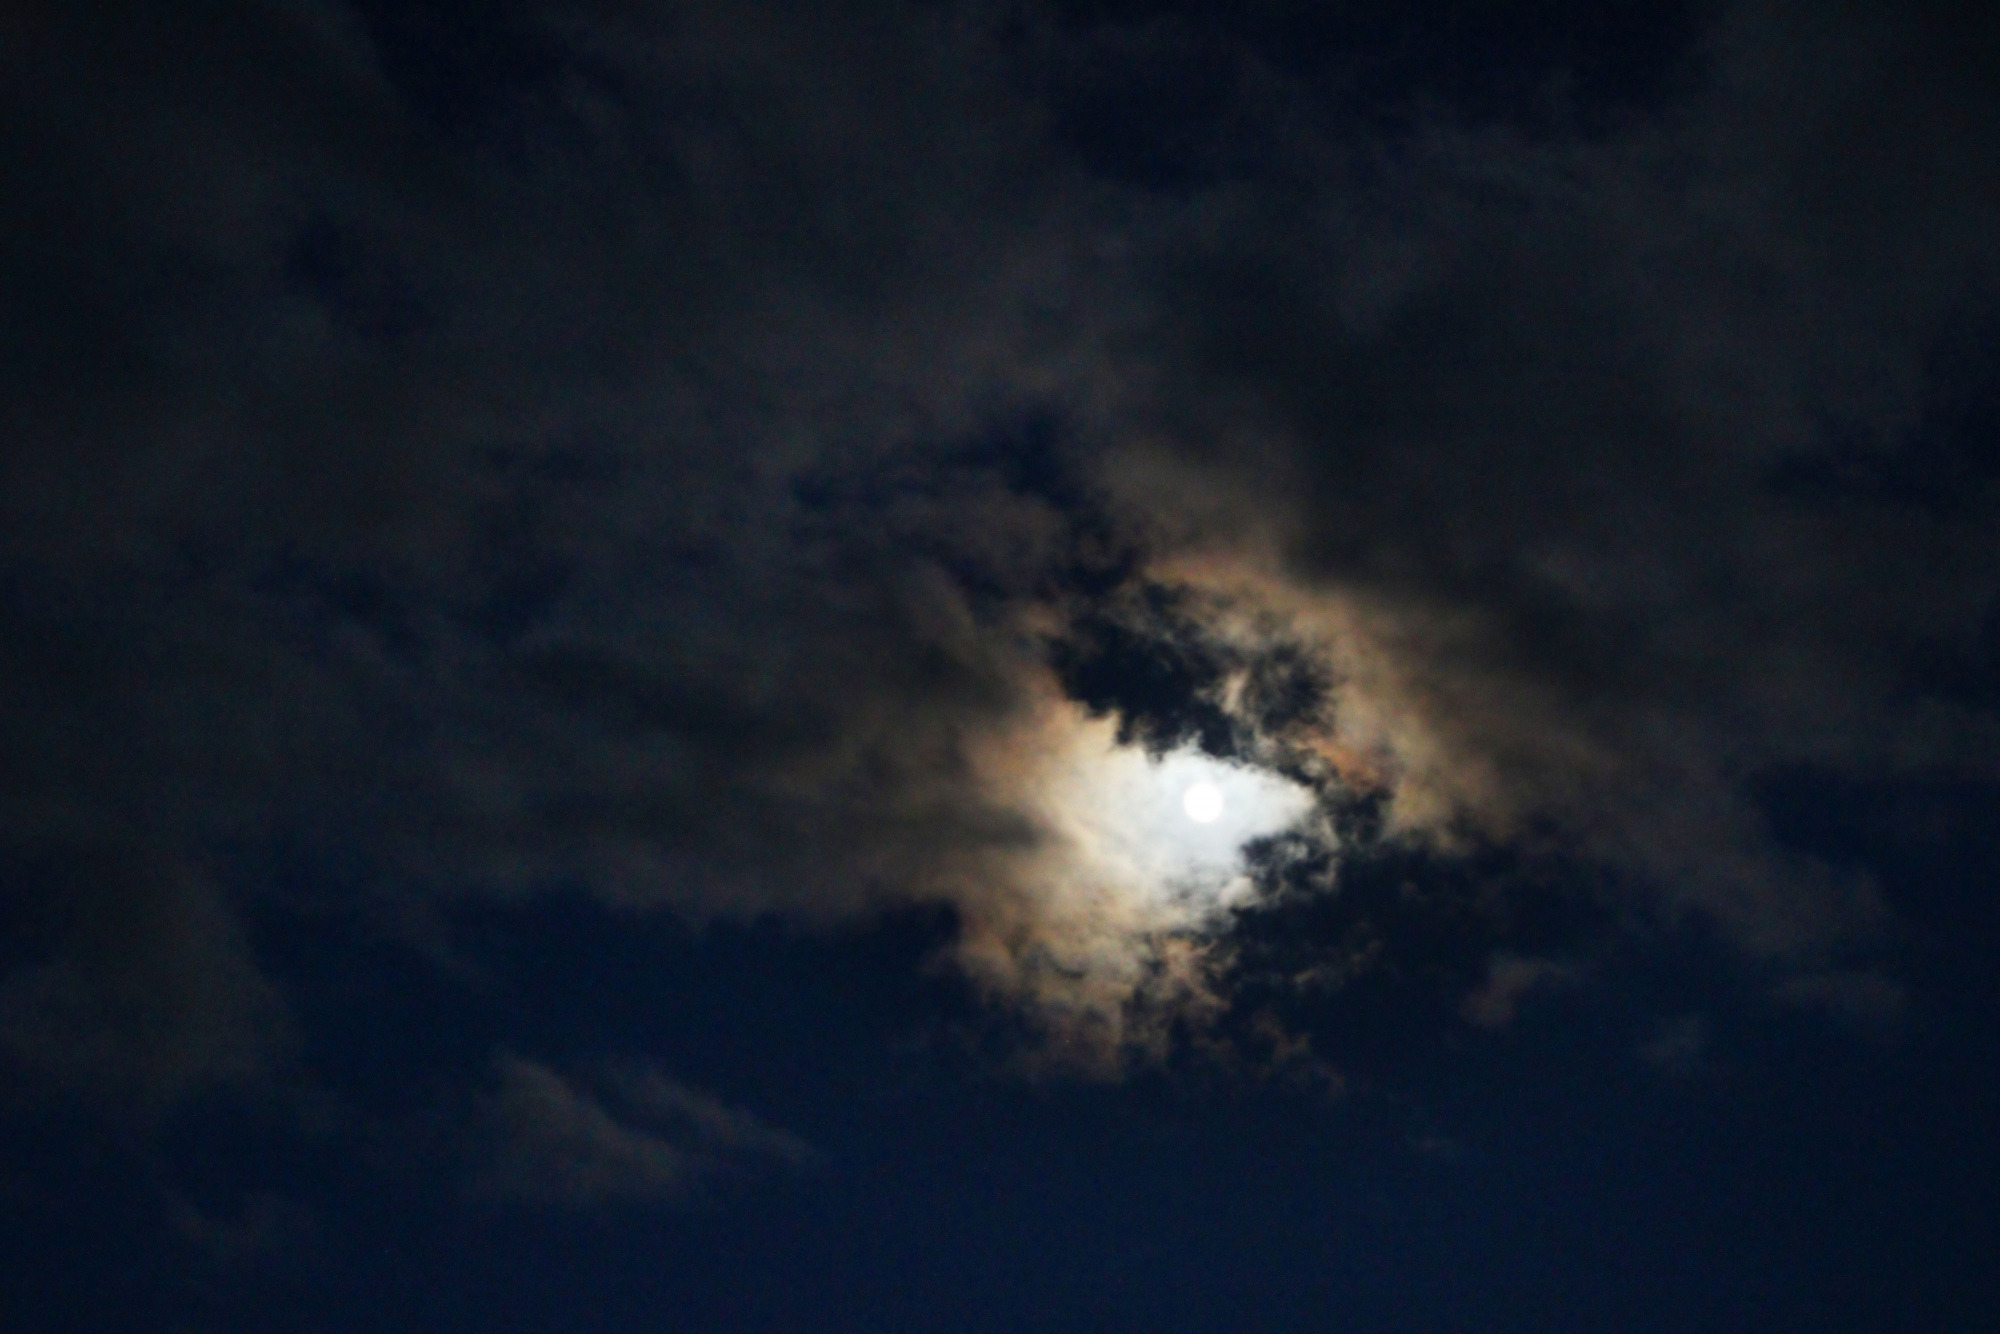 5 nuages Lune 2661N1B4 send.jpg